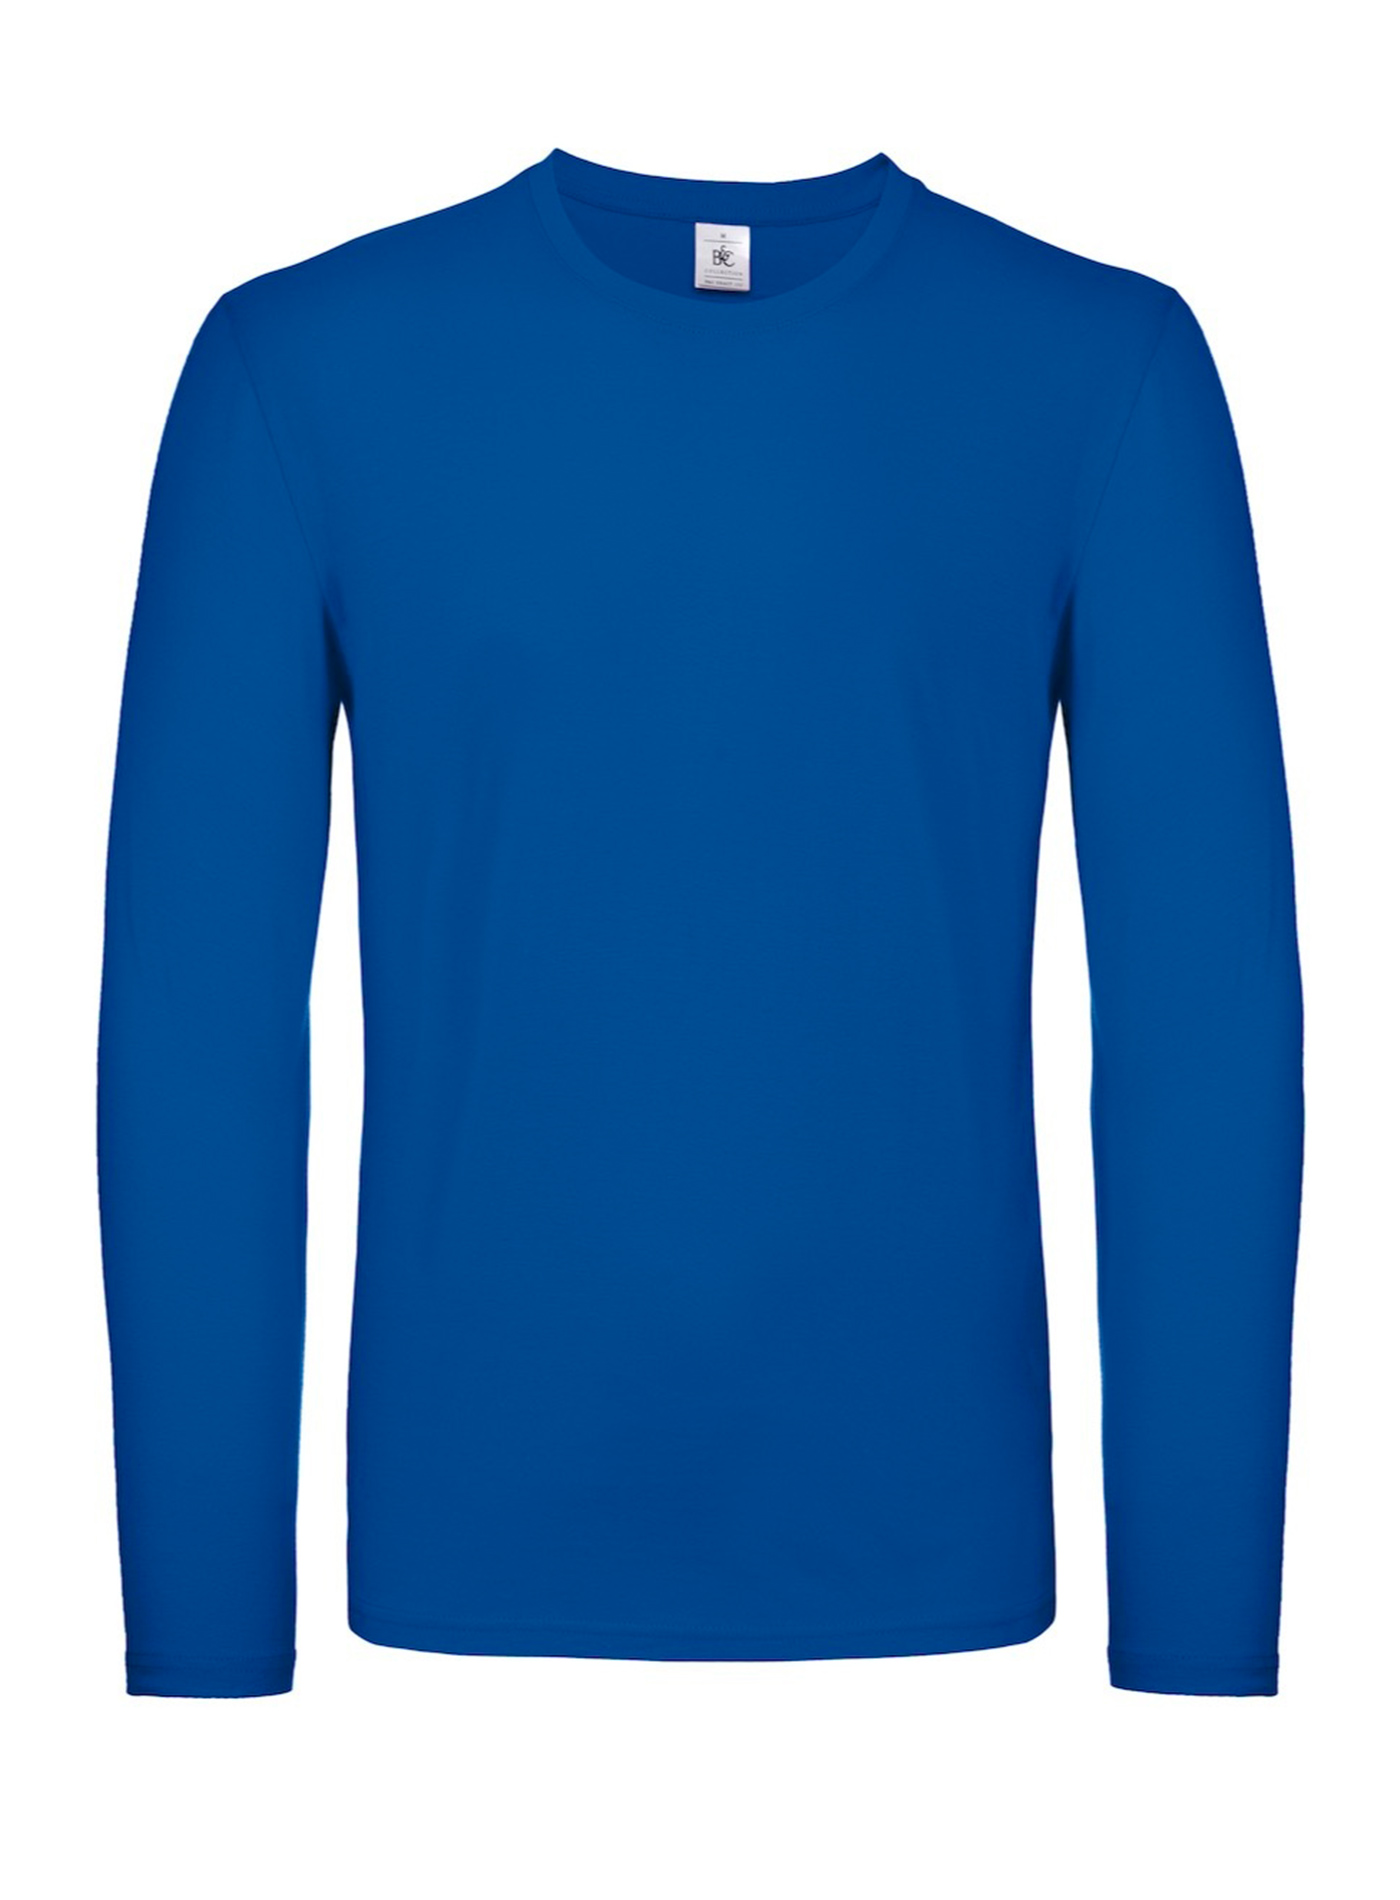 Tričko s dlouhým rukávem B&C Collection - královská modrá XL